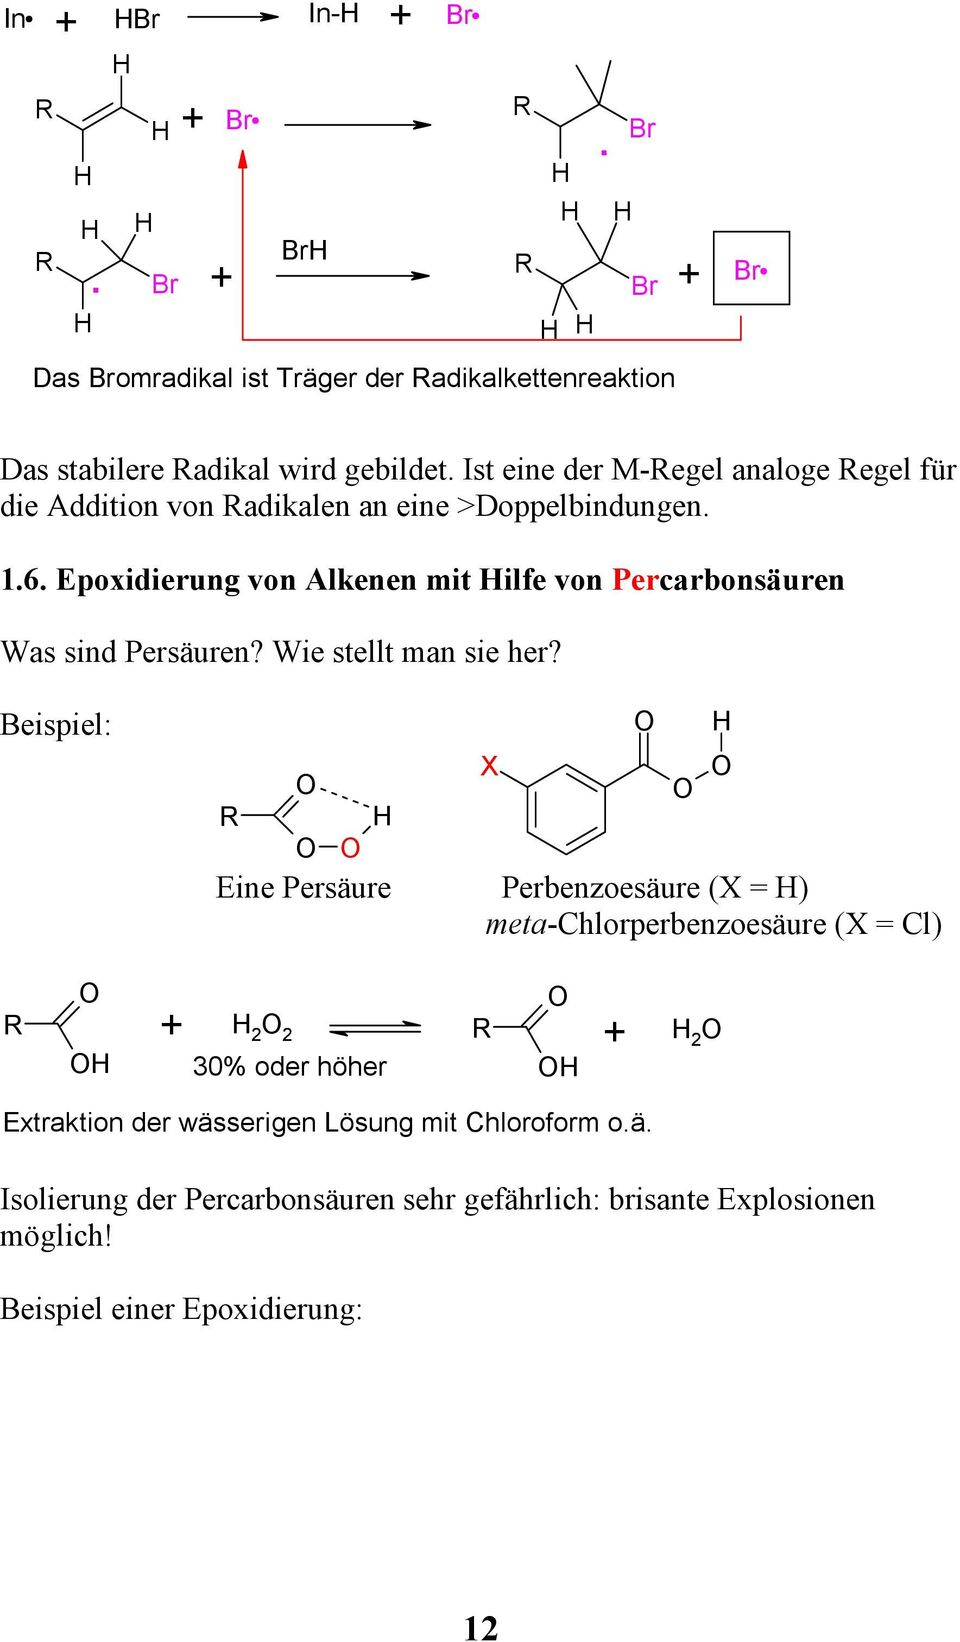 Epoxidierung von Alkenen mit ilfe von Percarbonsäuren Was sind Persäuren? Wie stellt man sie her?